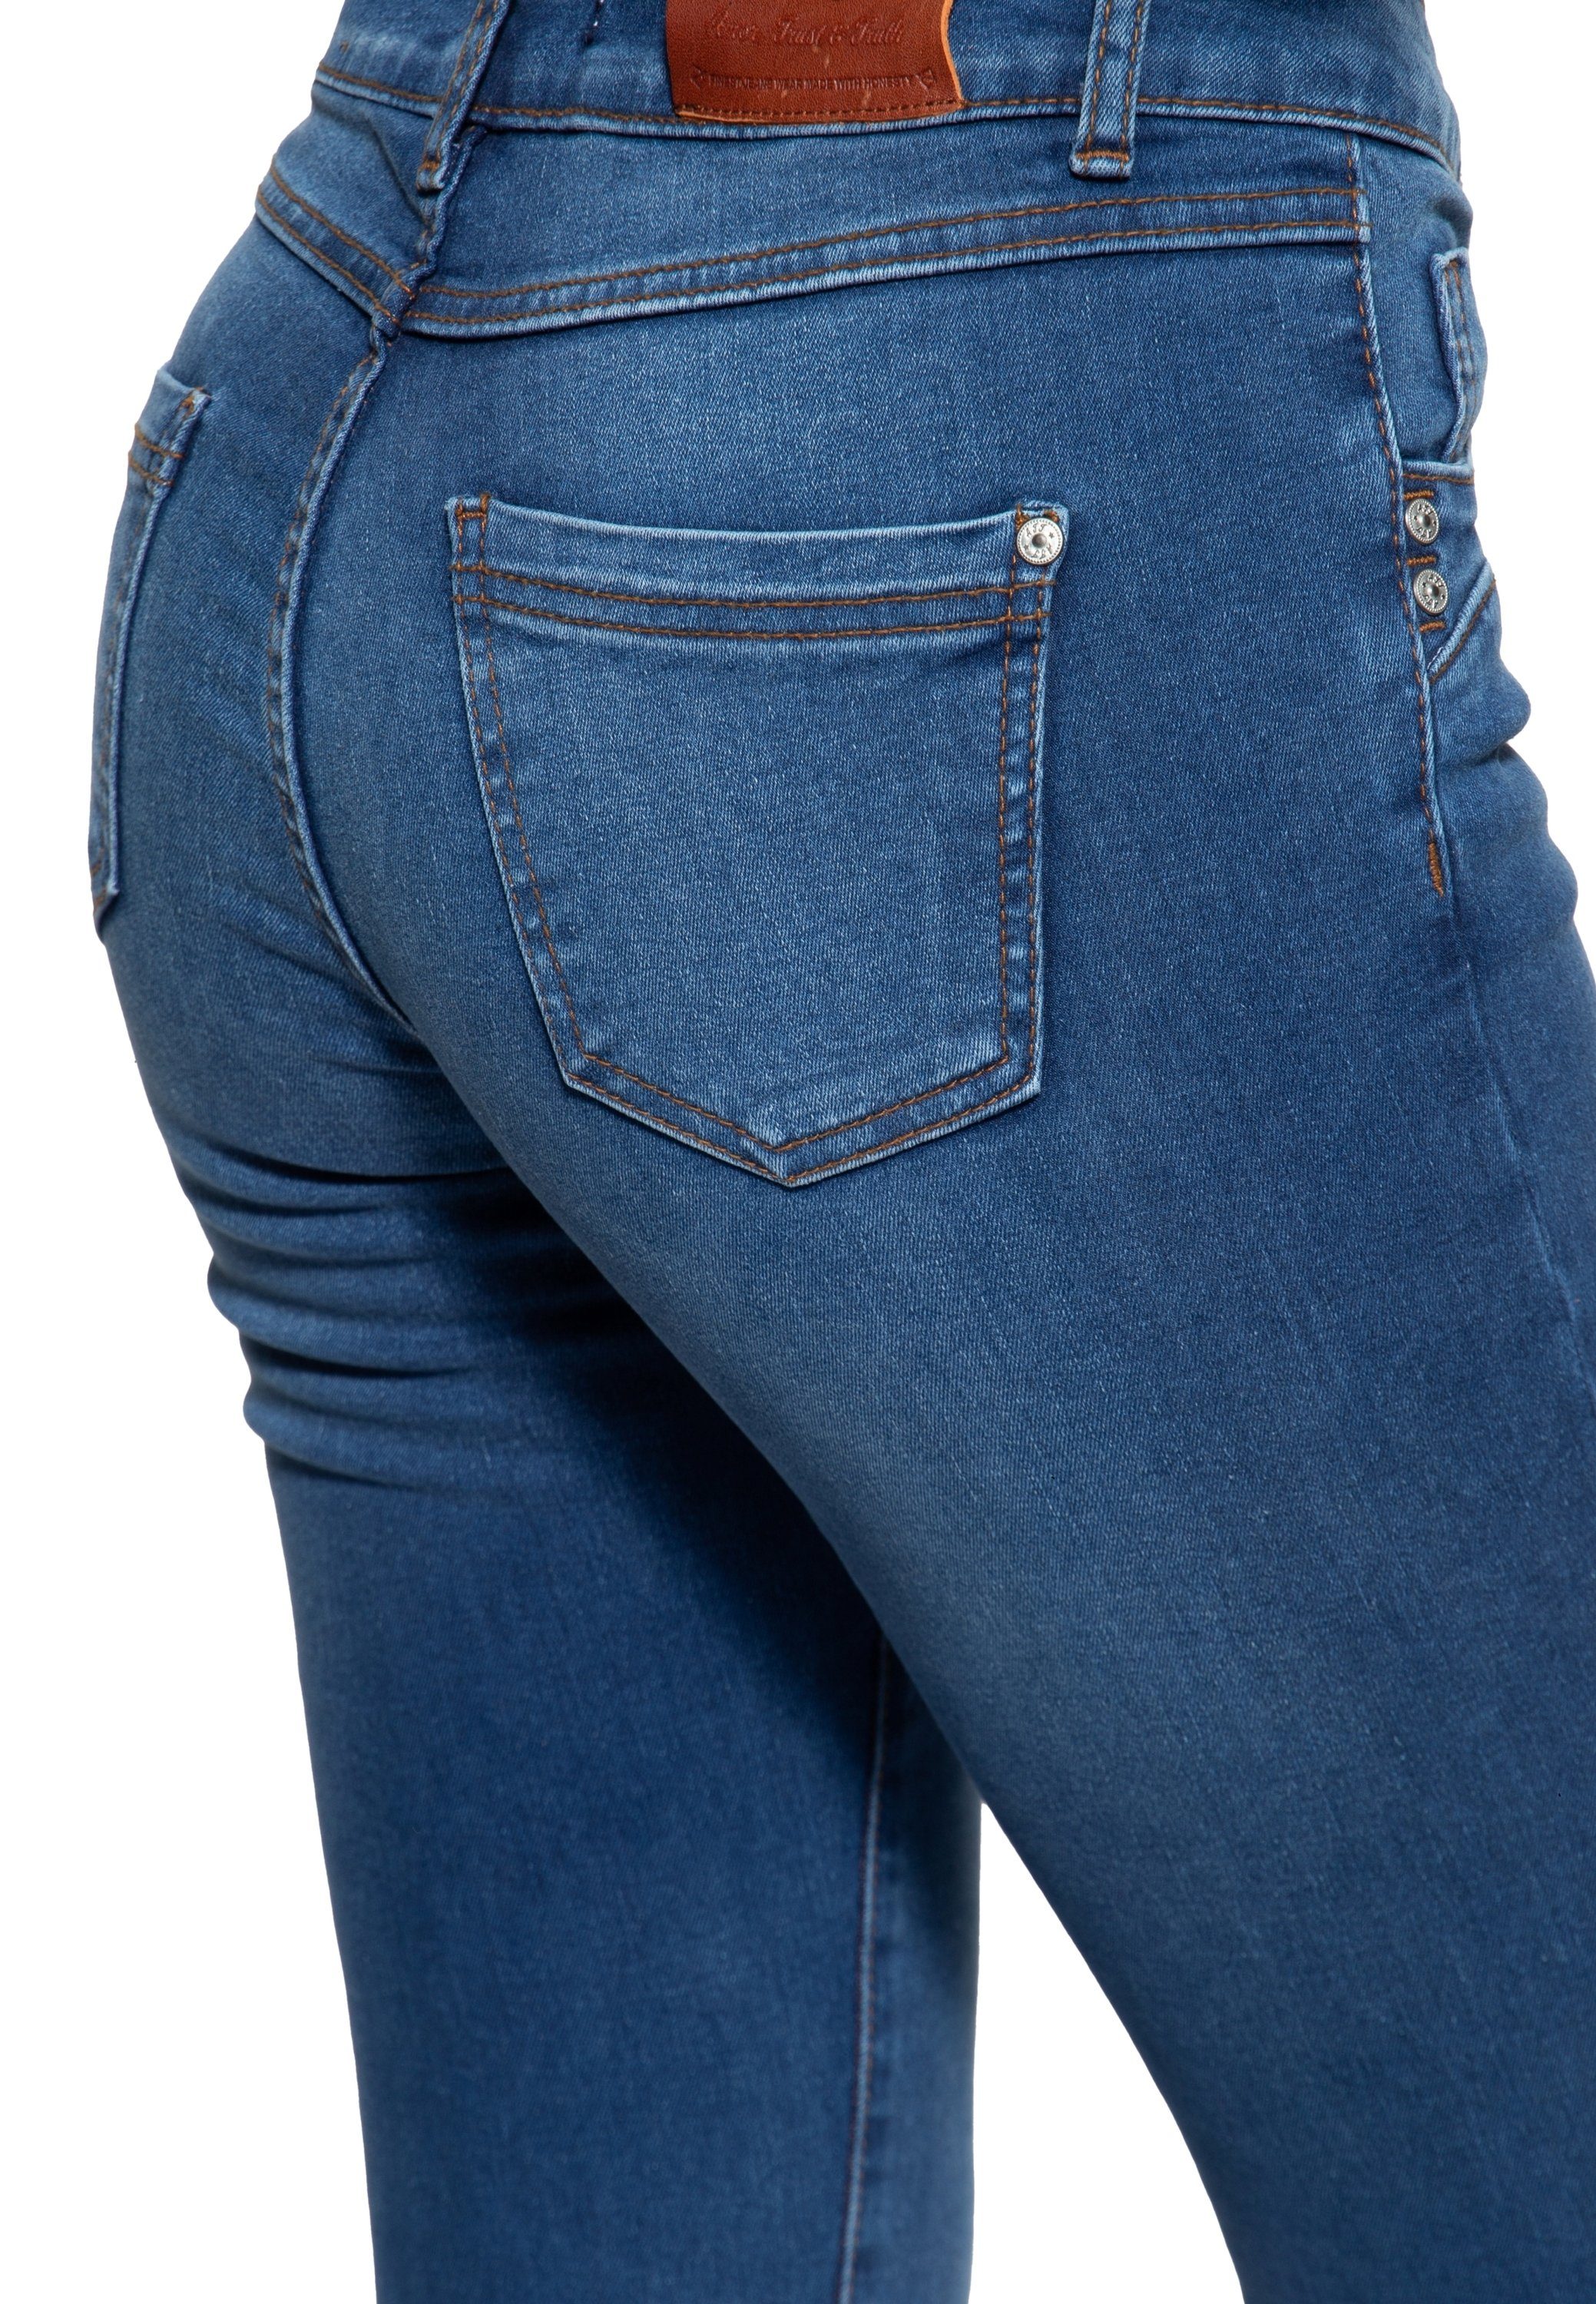 Damen Jeans ATT Jeans Slim-fit-Jeans Leoni Shape-Memory-Effekt